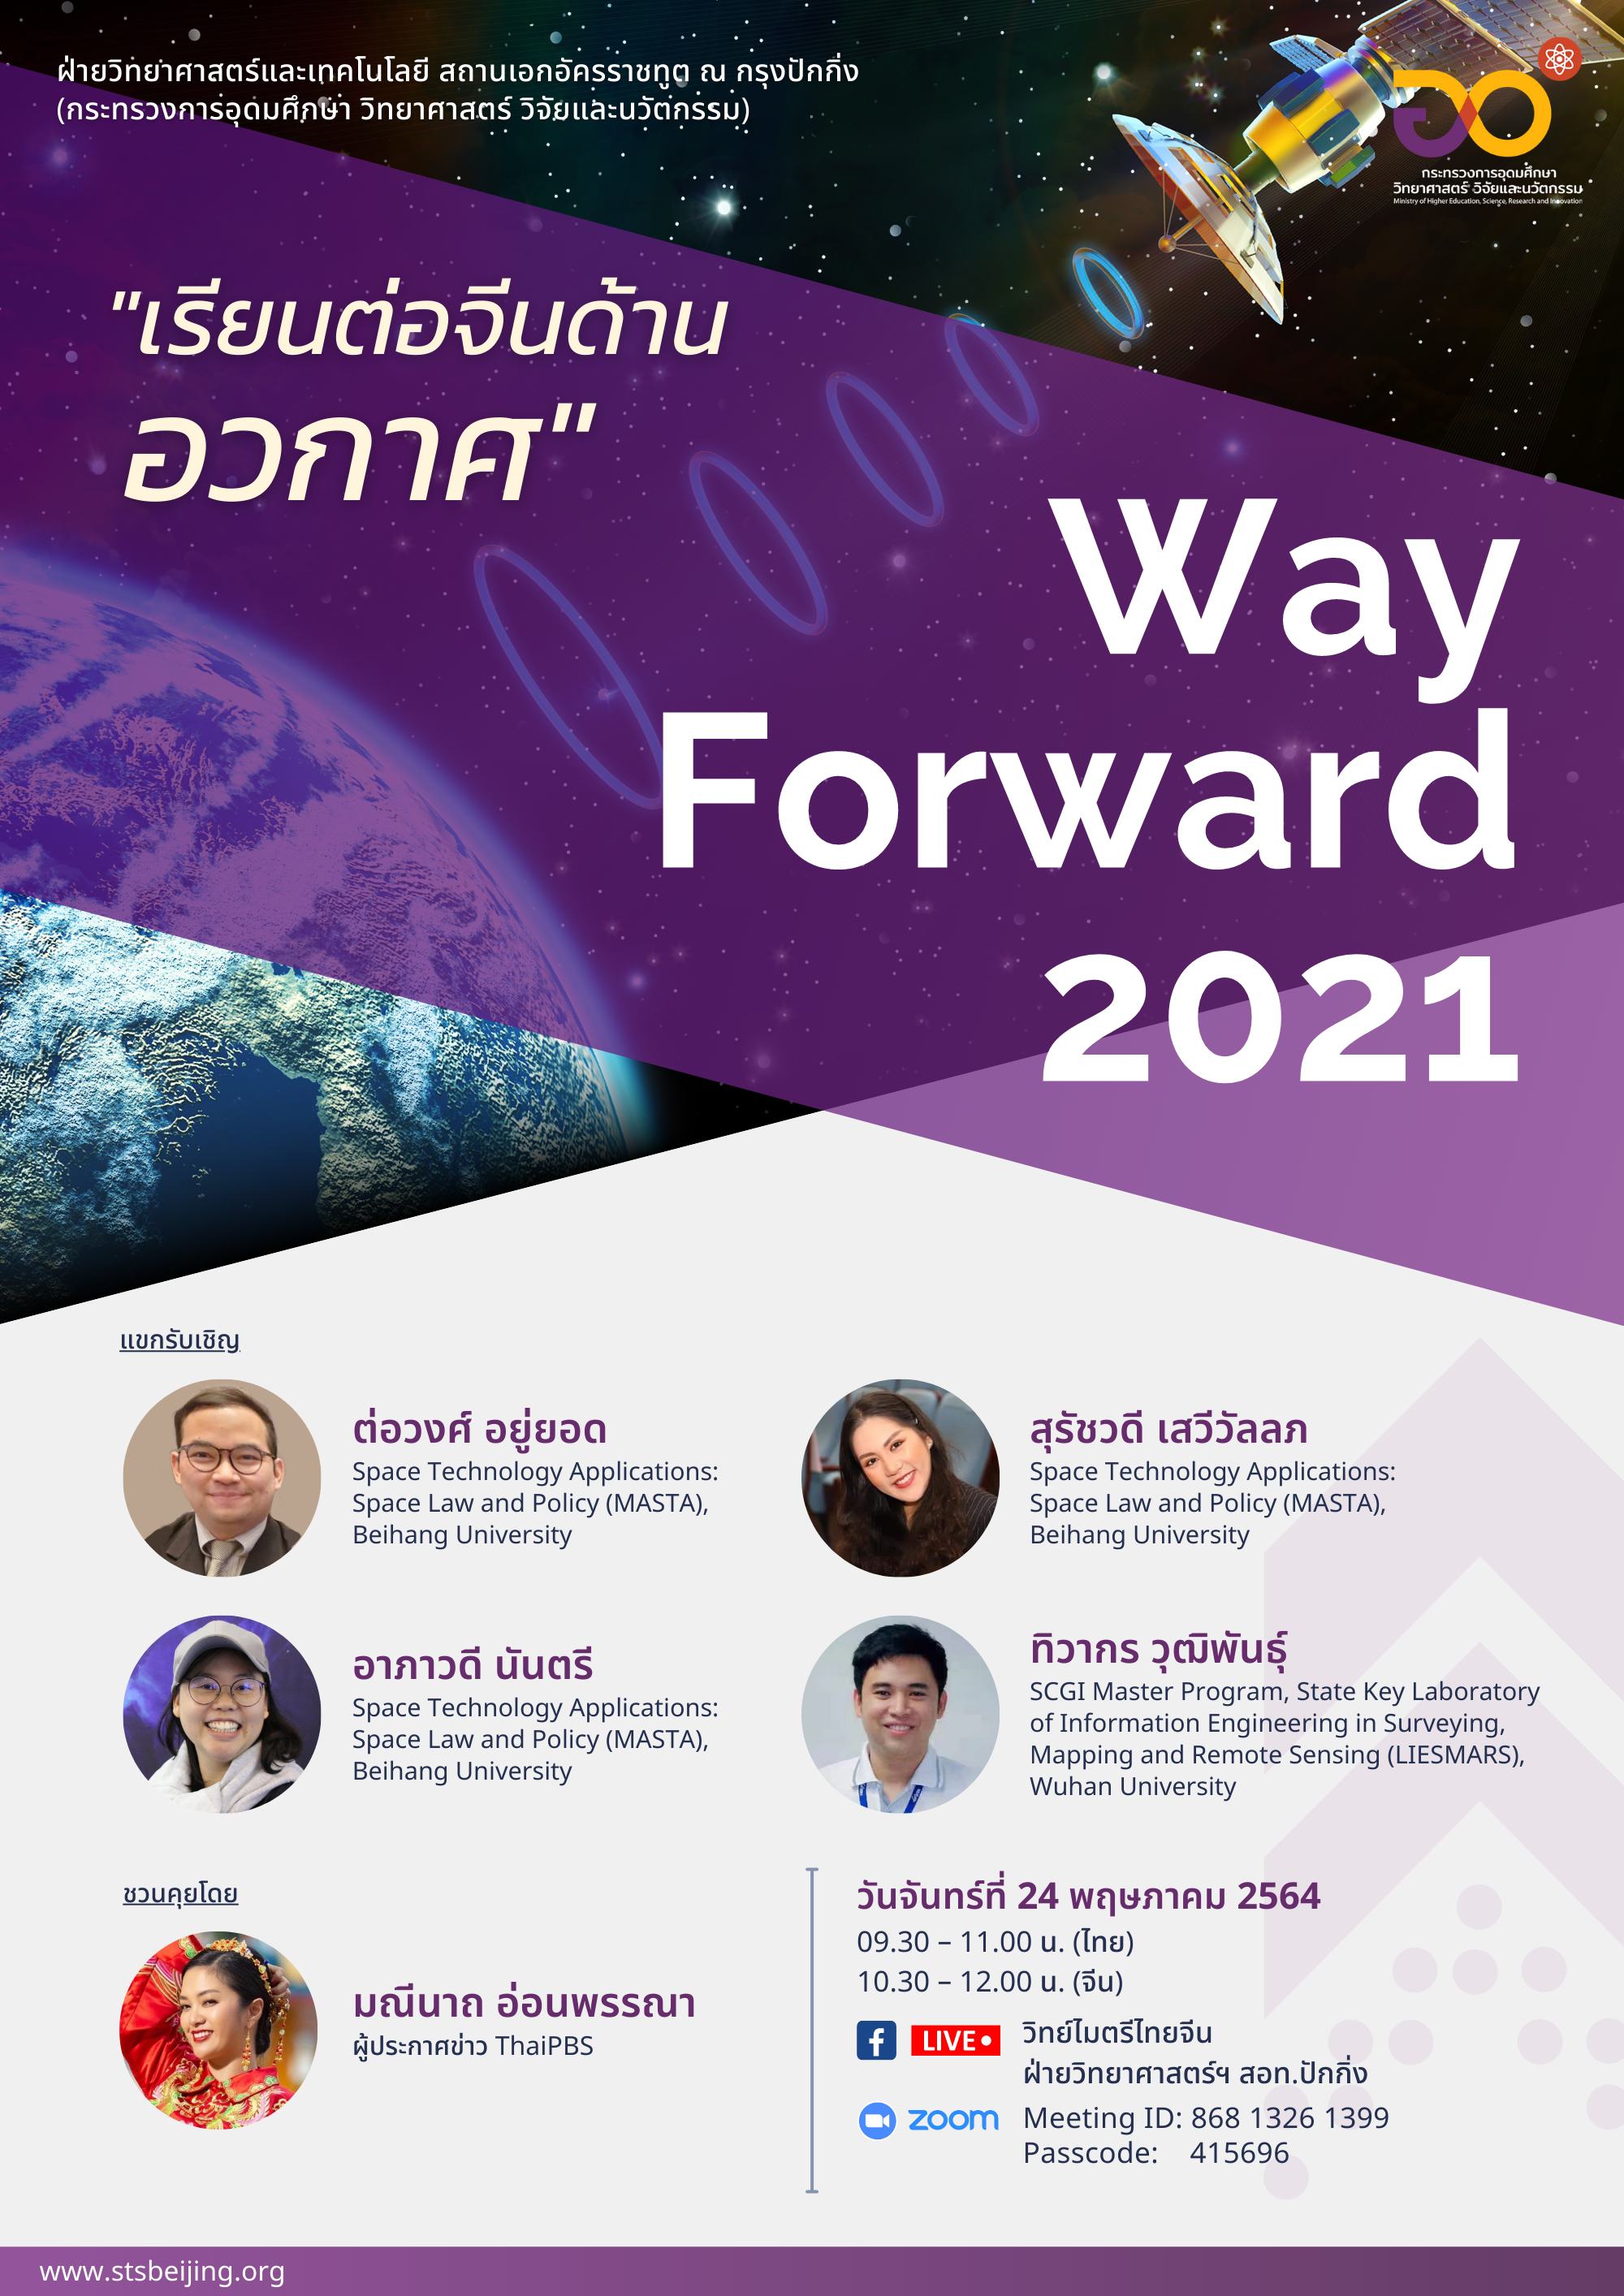 Way Forward 2021 ครั้งที่ 7 “เรียนต่อจีนด้านอวกาศ”